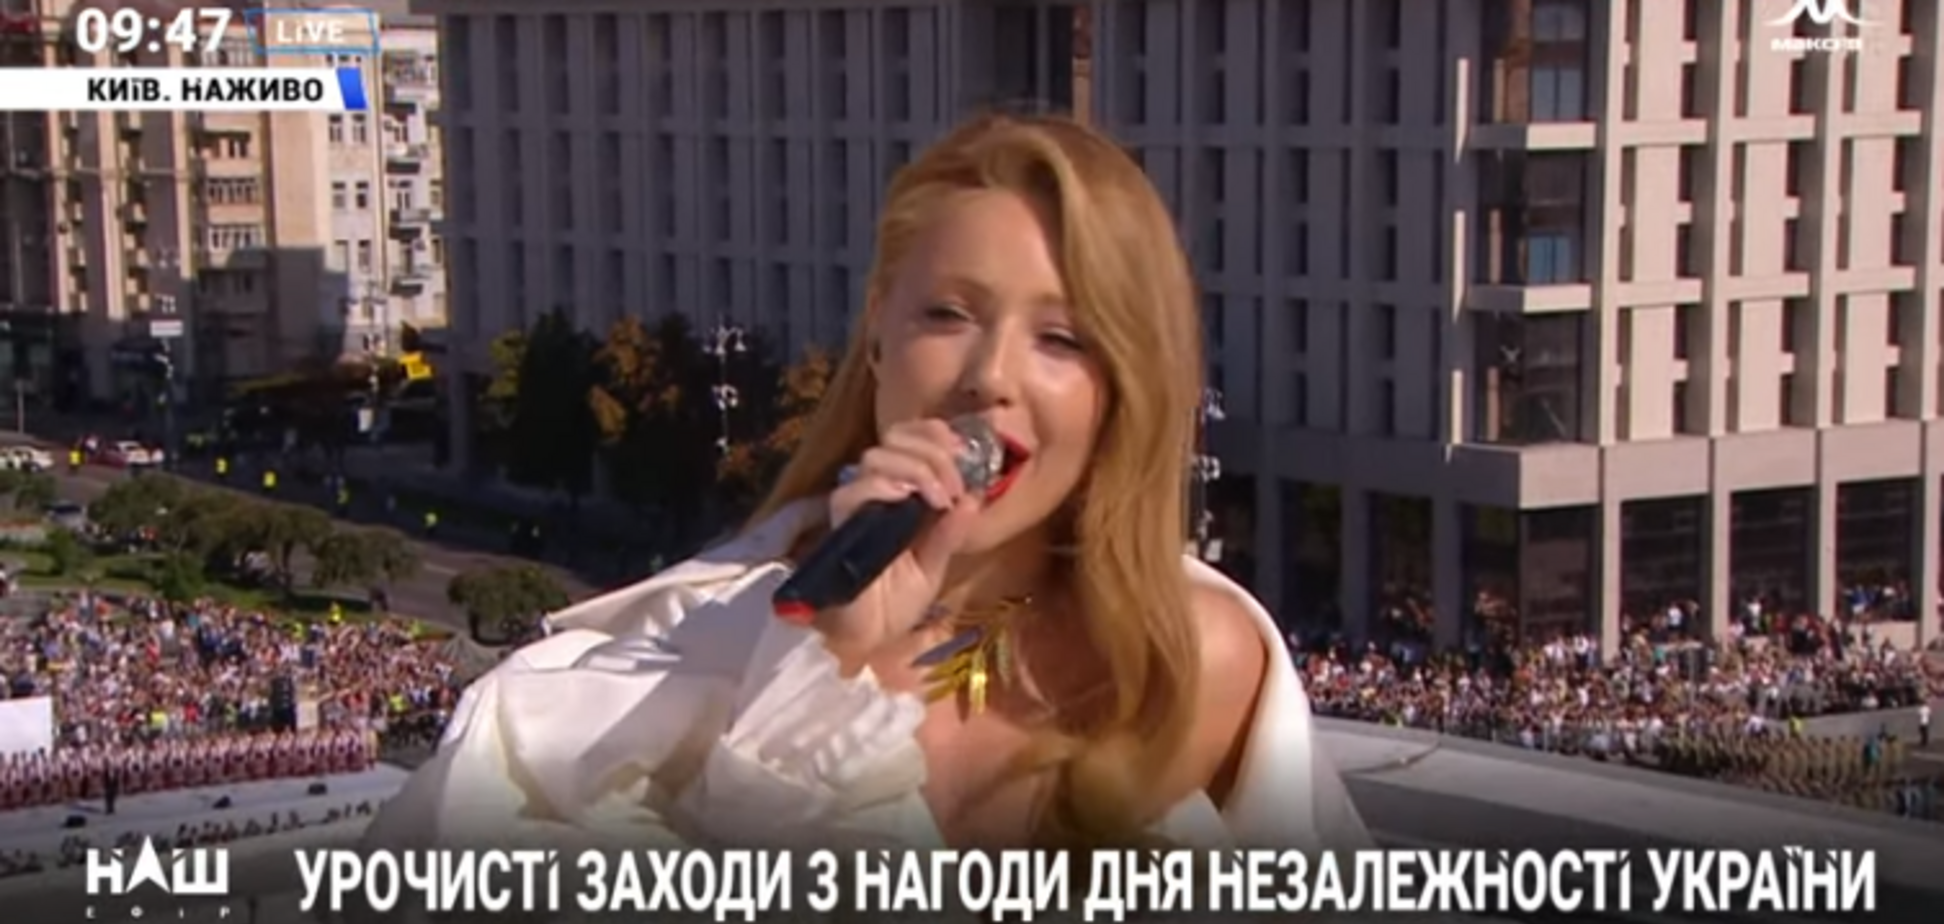 Тіна Кароль виконала гімн на даху в центрі Києва: фото і відео